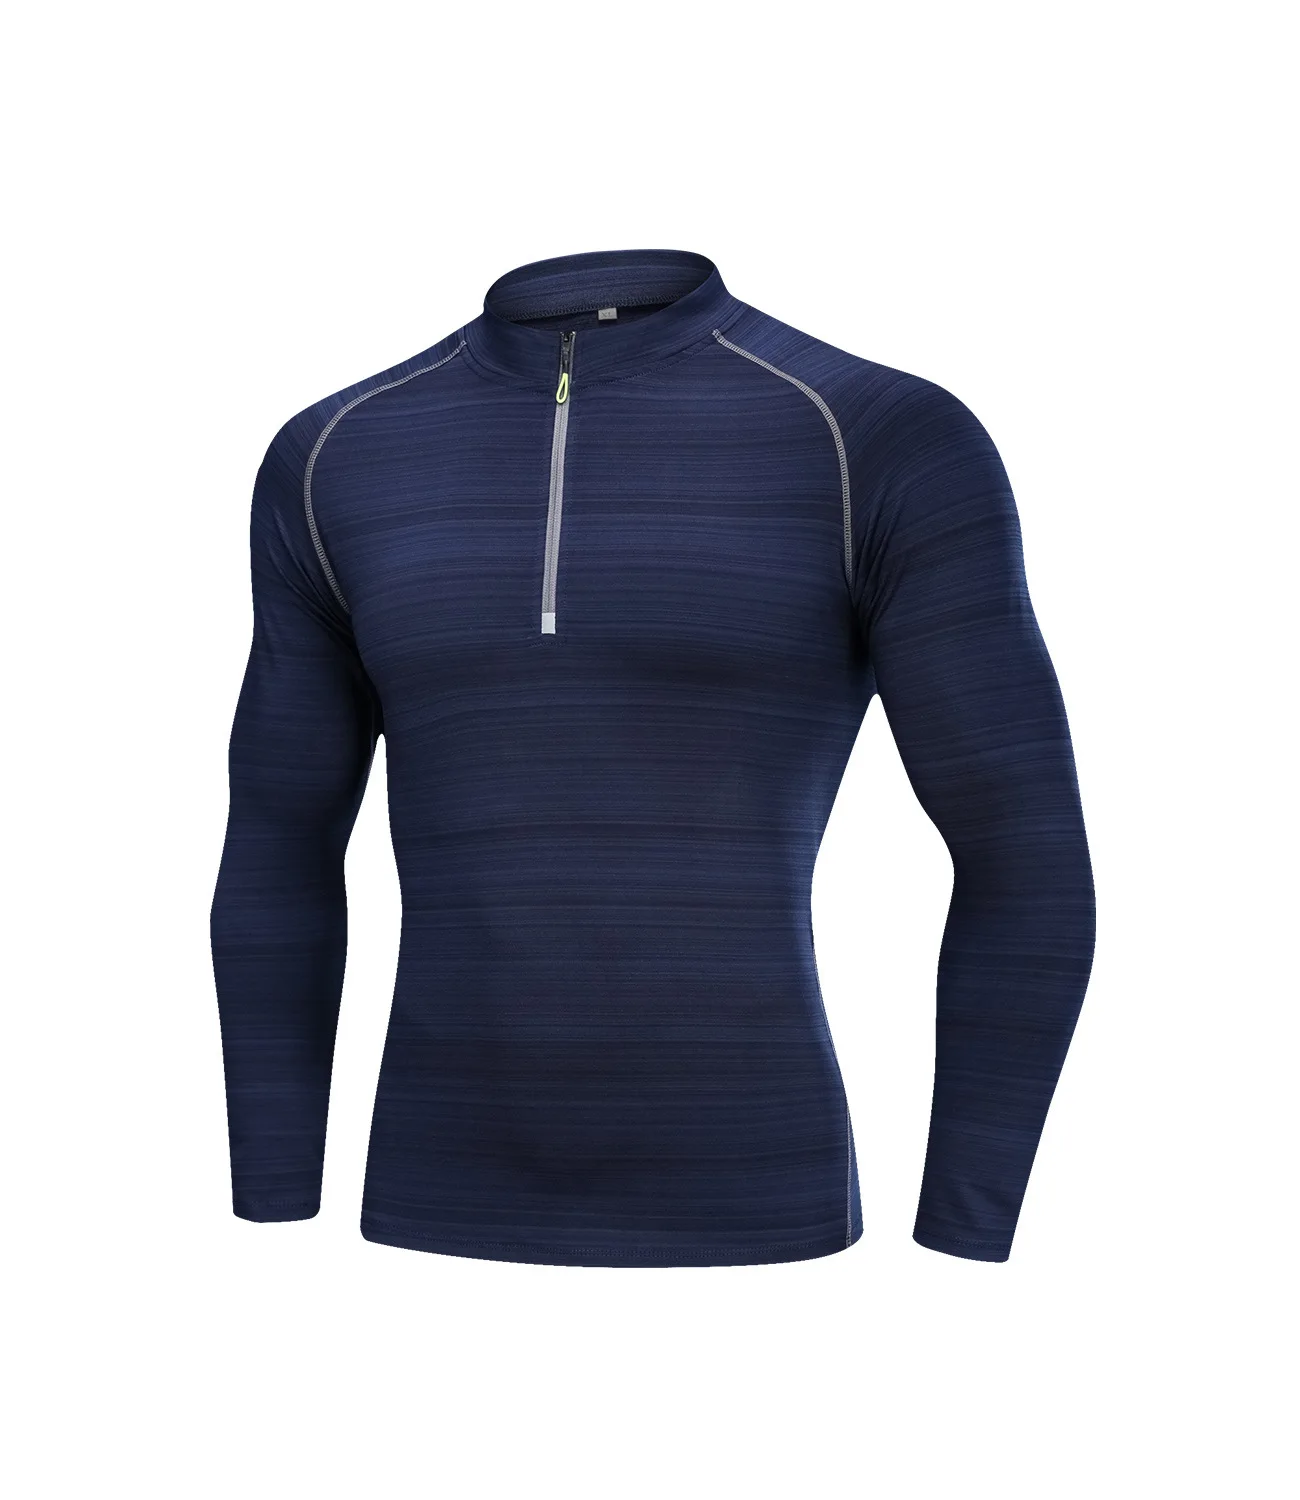 PureLeisure мужские быстросохнущие базовые слои рыболовные футболки Велоспорт базовые слои Топ Зимний велосипед Рыбалка Джерси Спортивное нижнее белье - Цвет: Синий